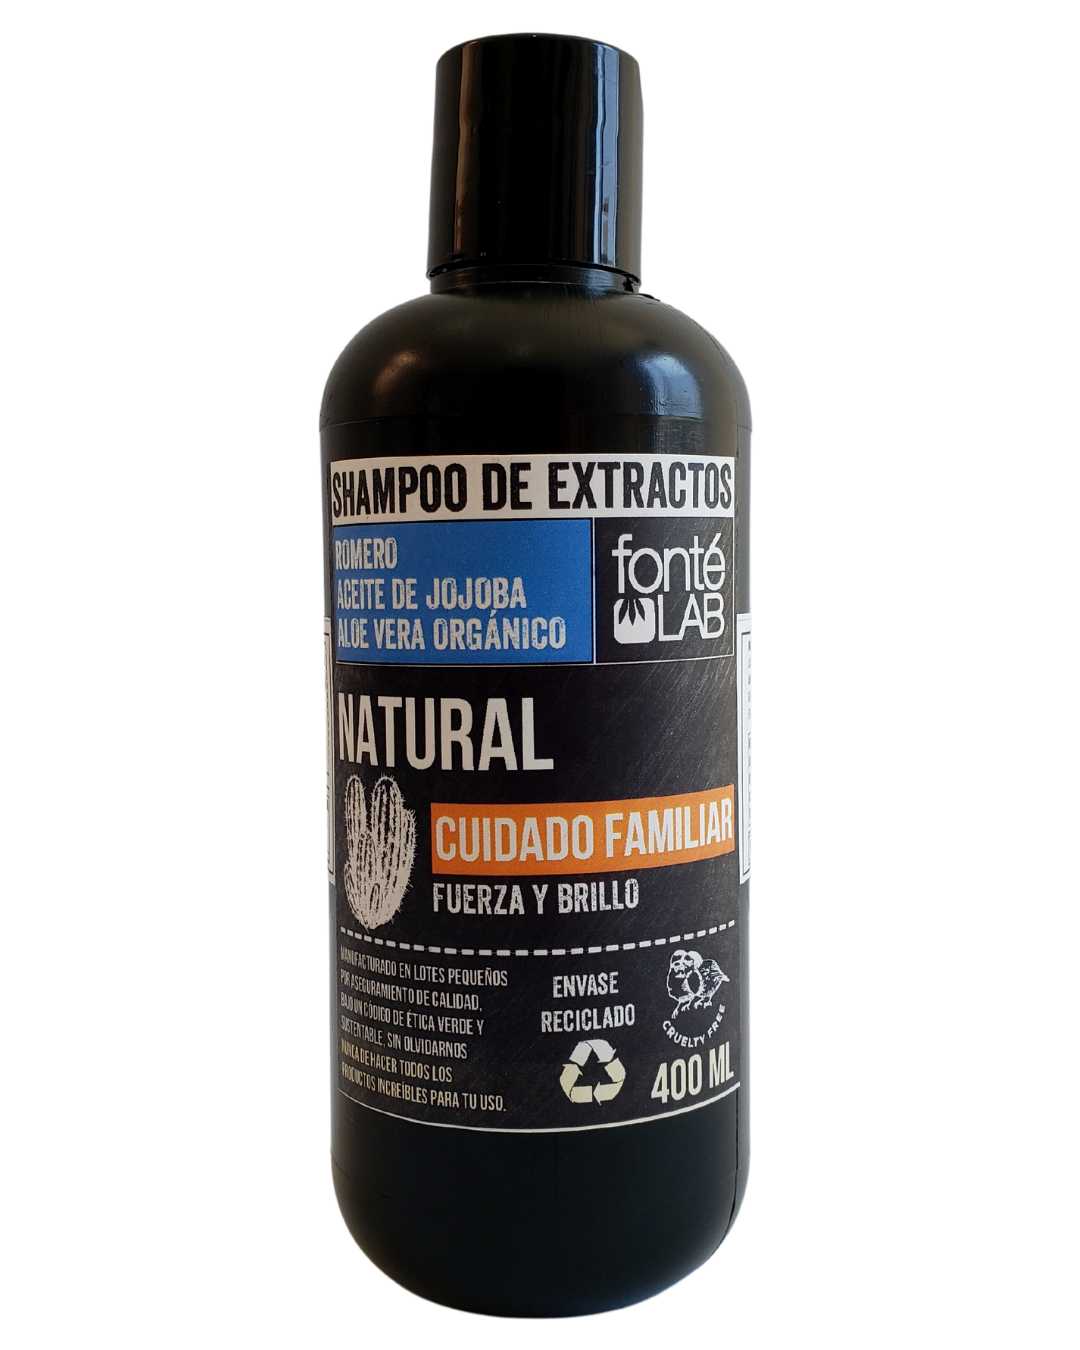 Shampoo Familiar de extractos naturales